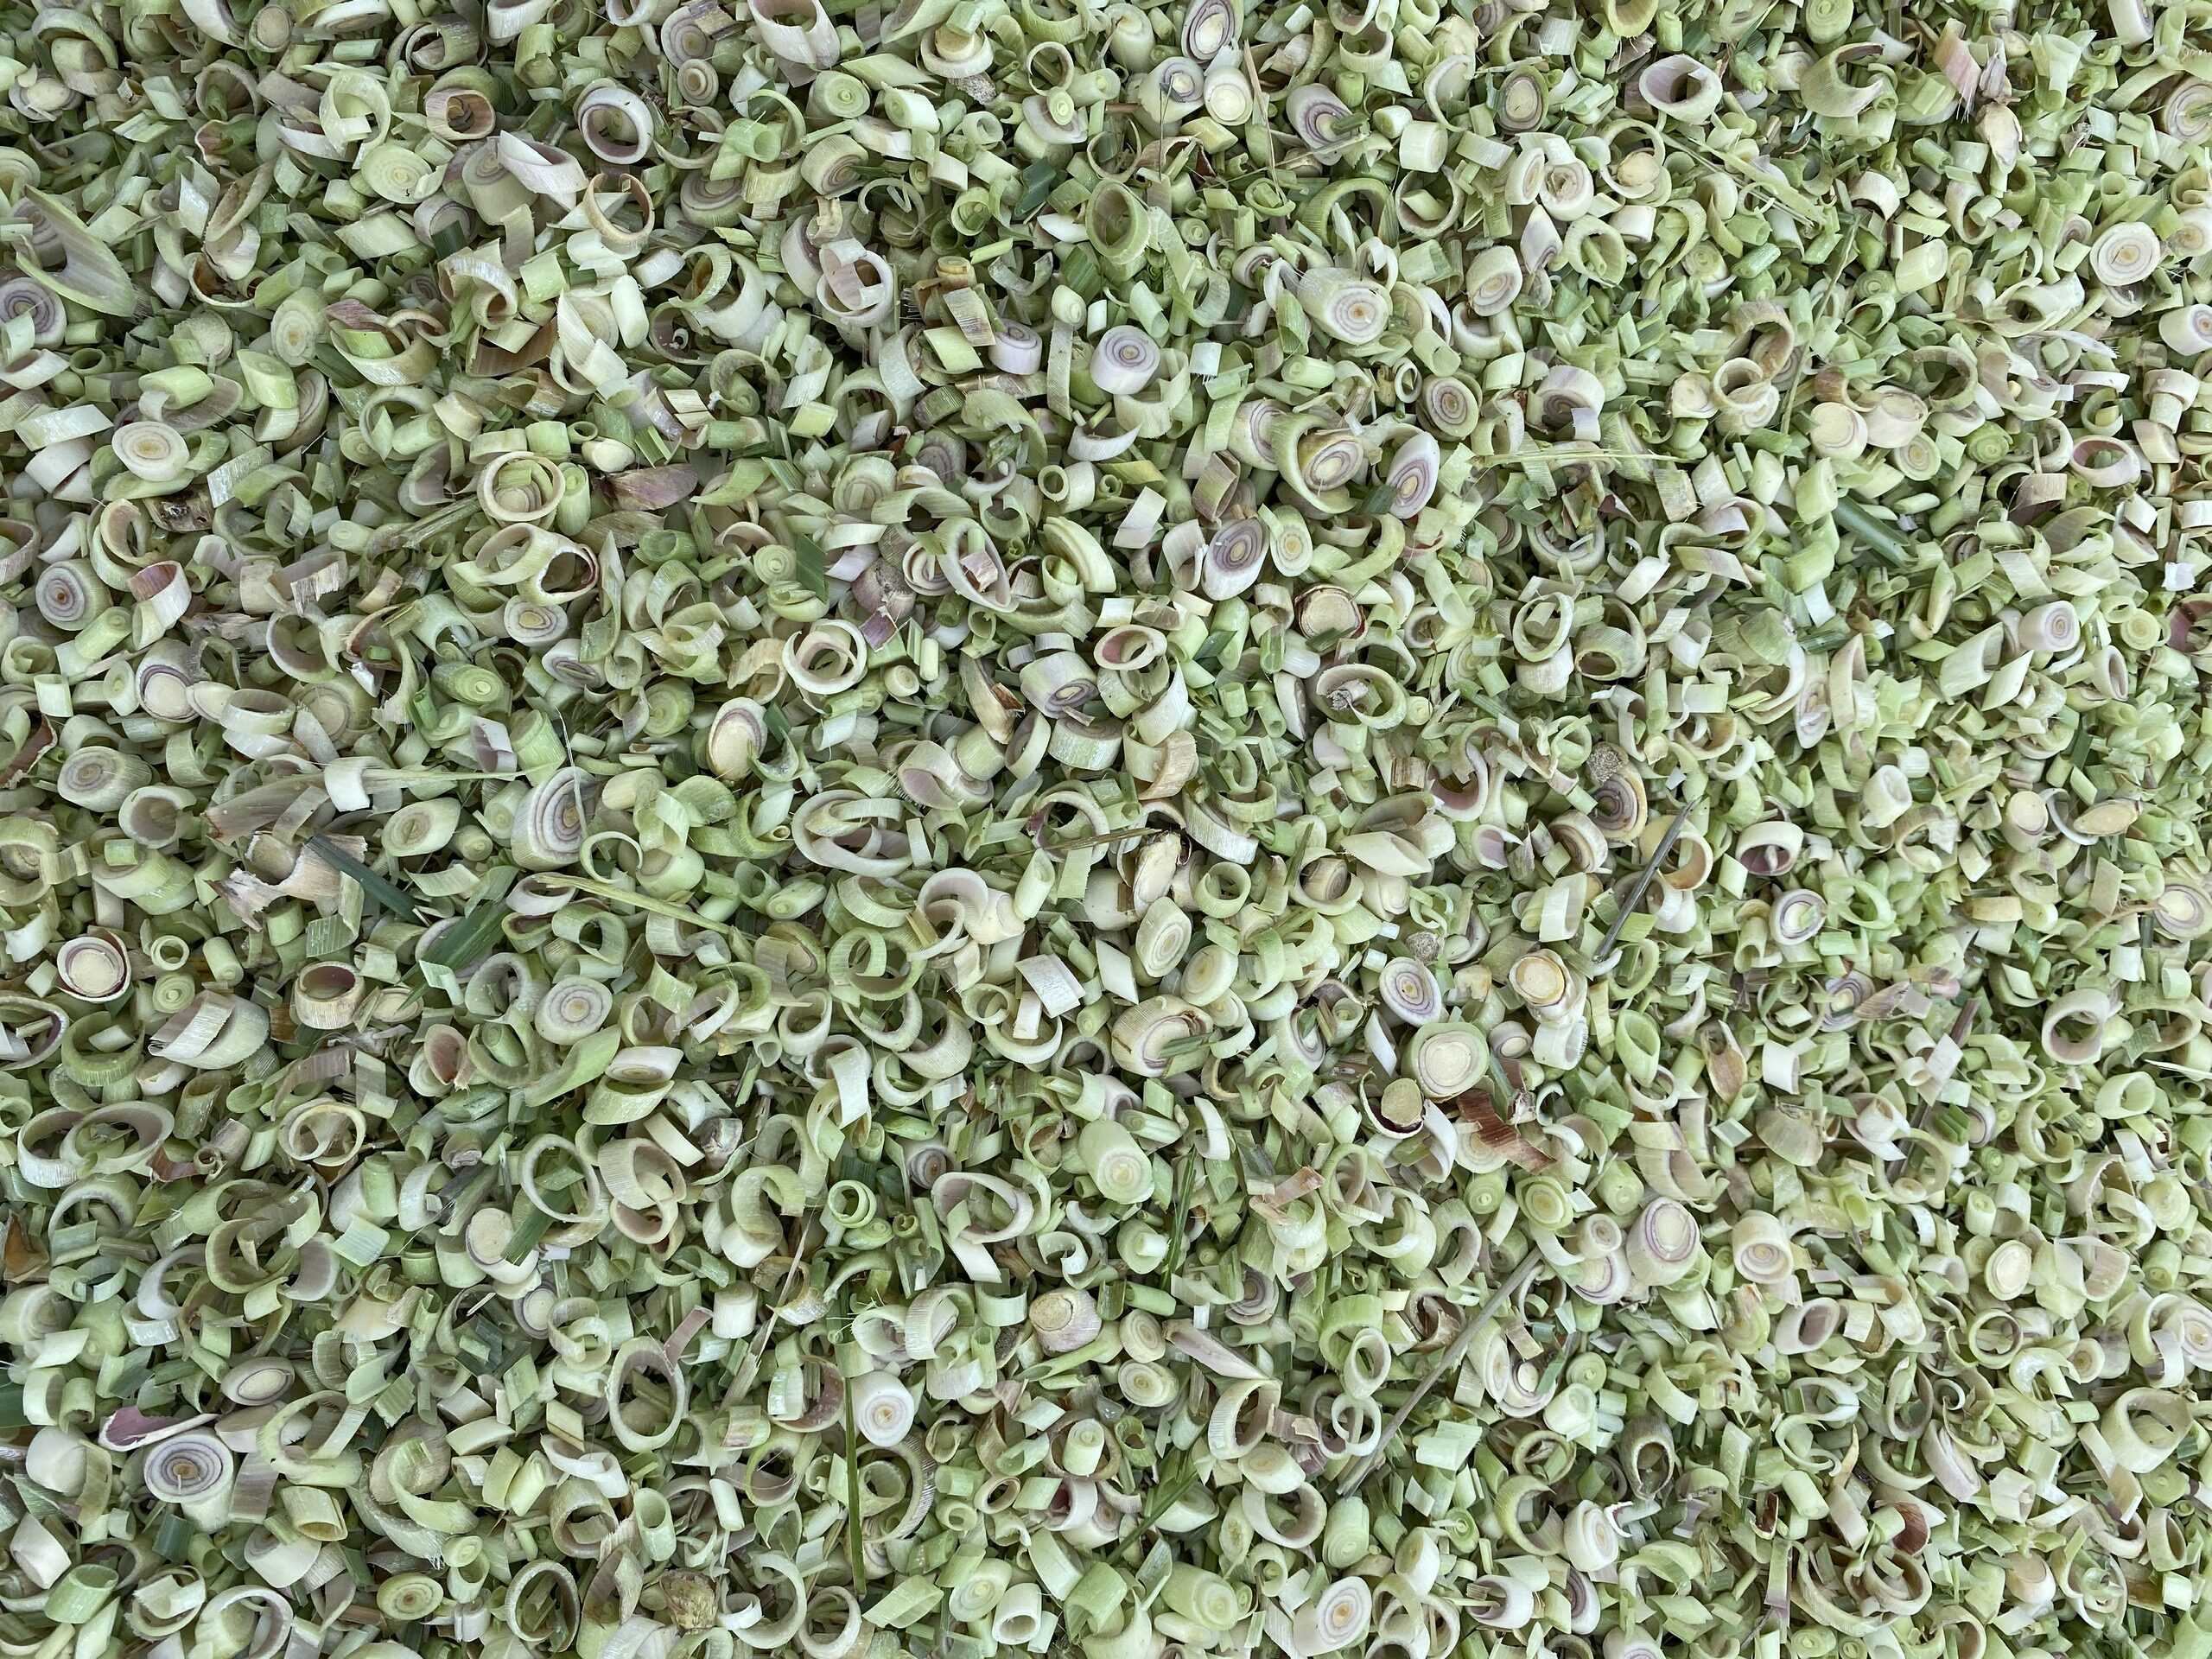 Sả sấy khô / Dried lemon grass